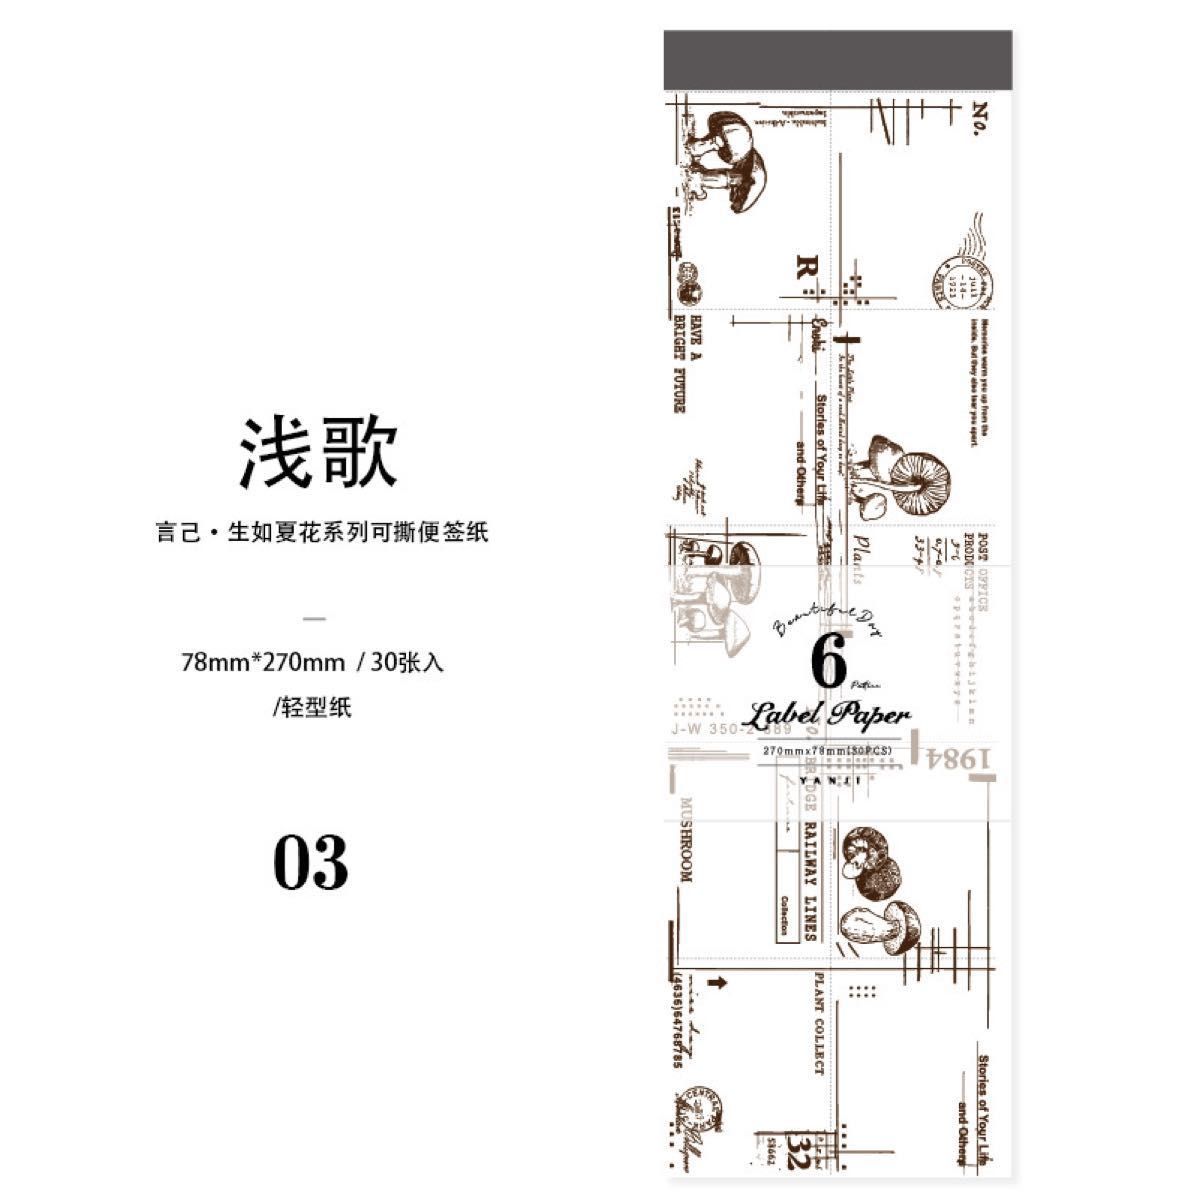 【コラージュ素材】 紙モノ 30枚×5種 B-17